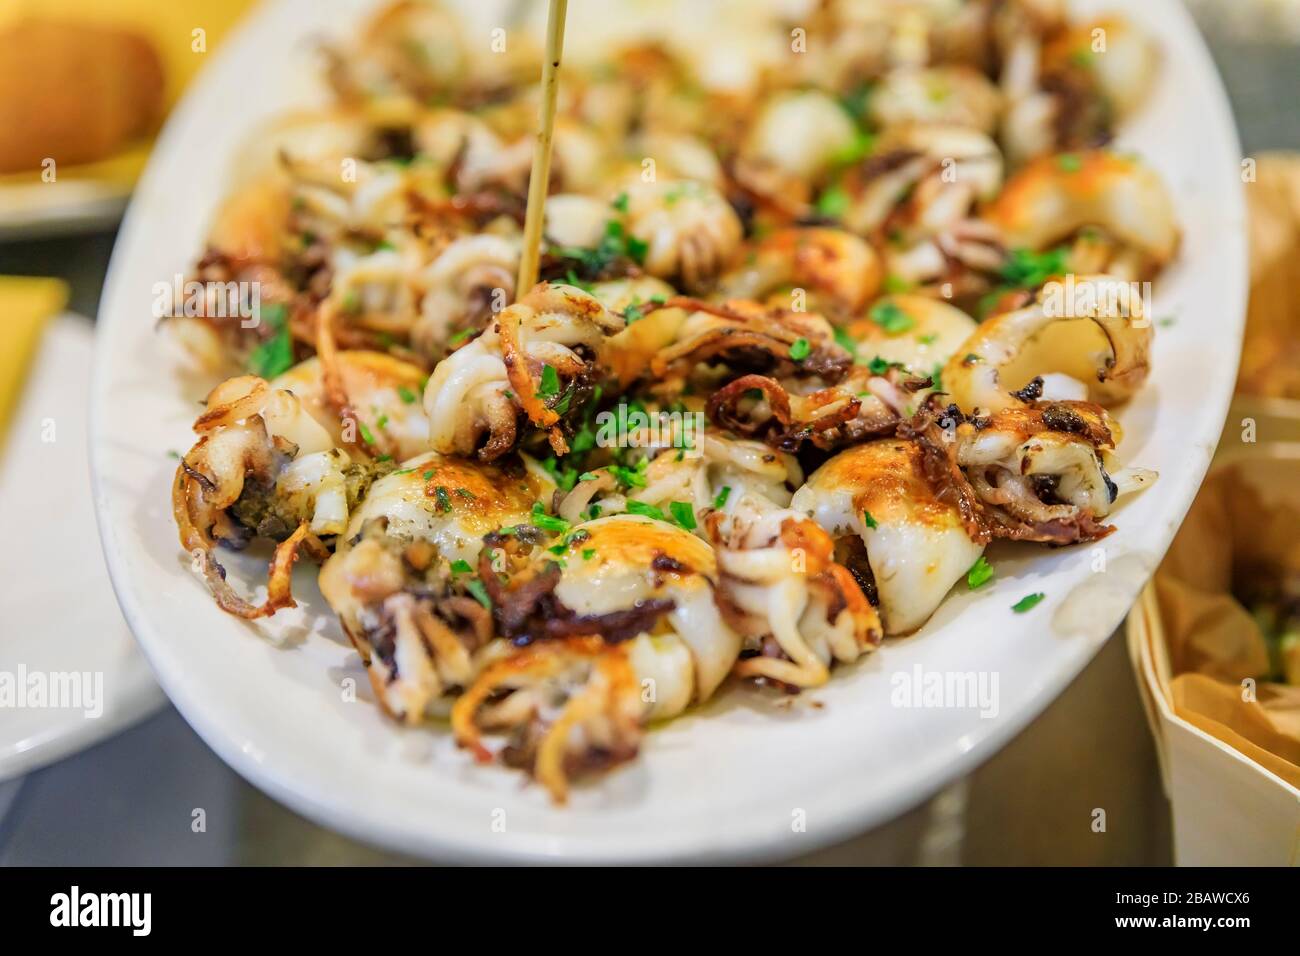 Tradizionale Street food italiano a Venezia - Baby calamari fritto in mostra su un piatto in una stalla, Italia Foto Stock